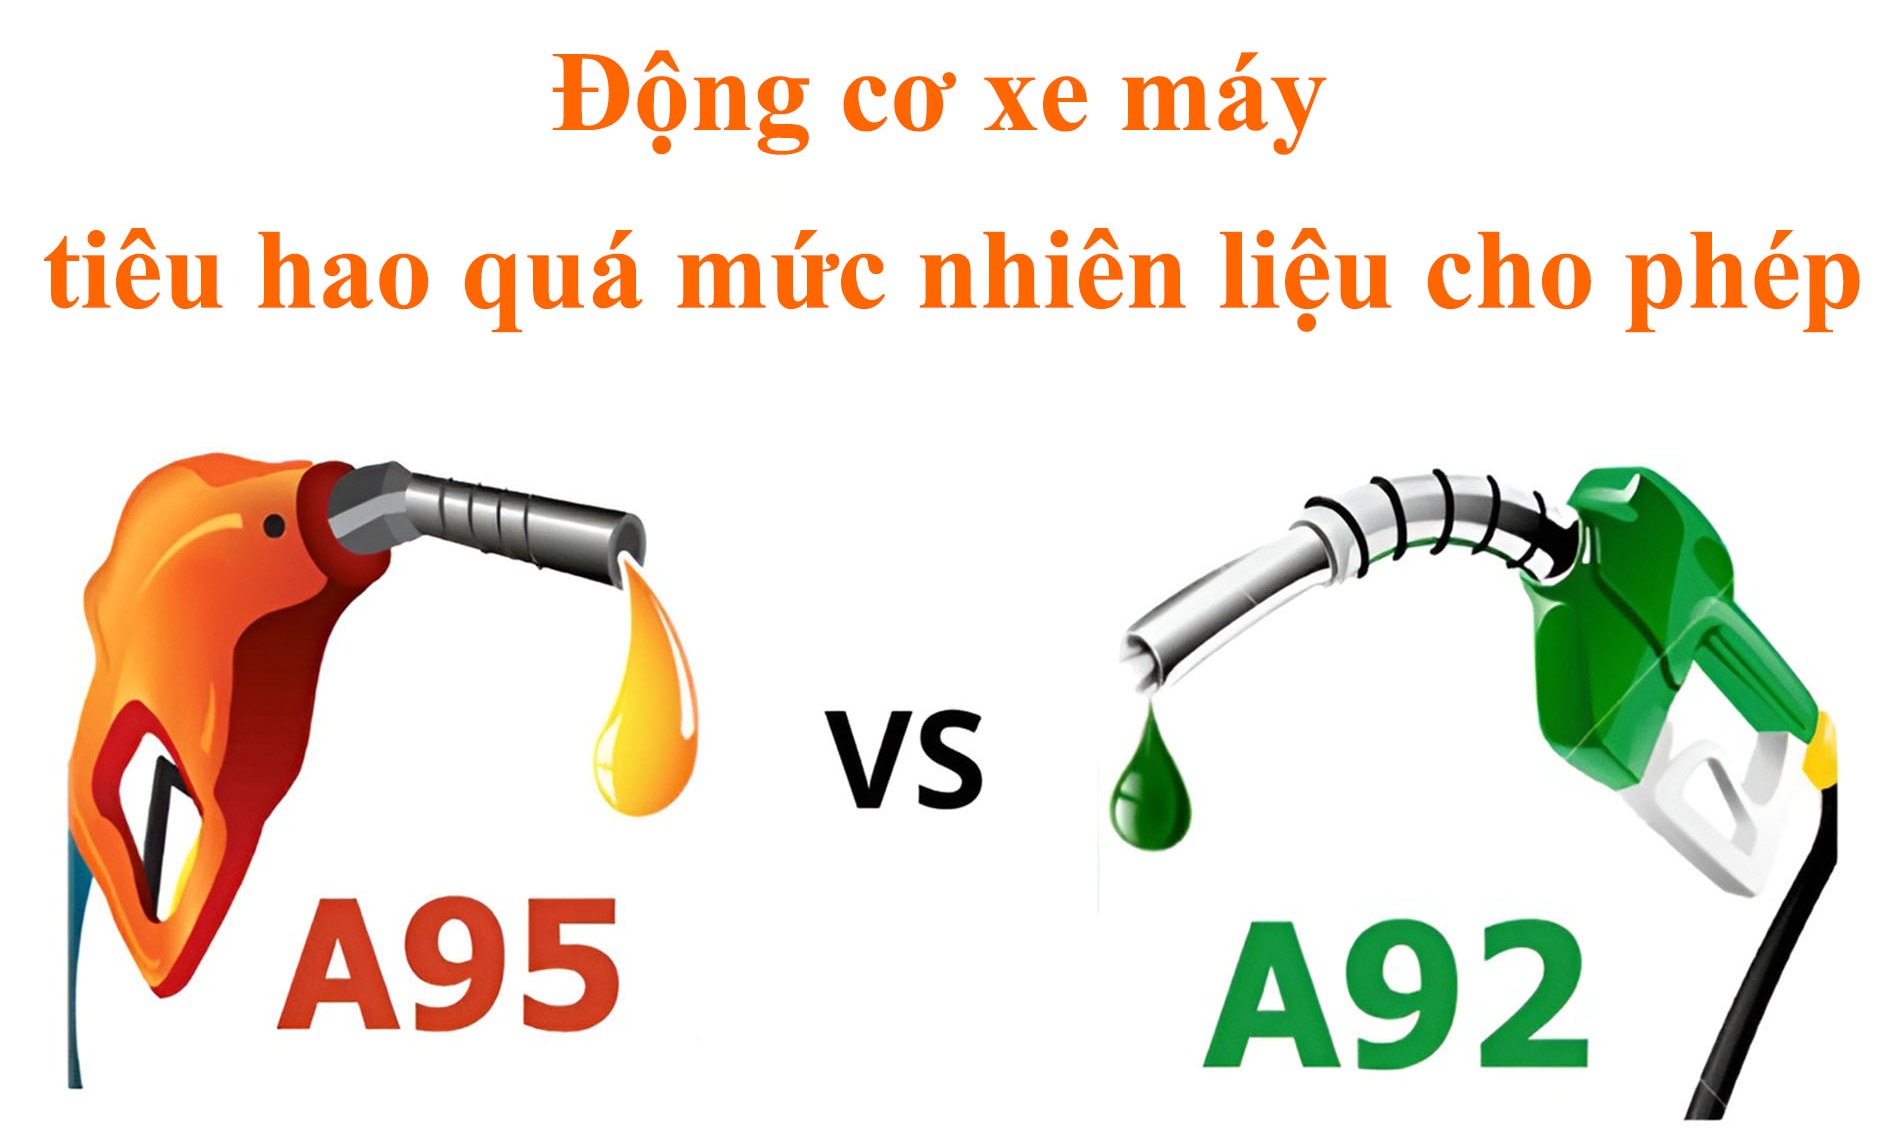 Sử dụng loại xăng có chỉ số octan không phù hợp cũng khiến động cơ xe tiêu hao nhiên liệu quá mức cho phép